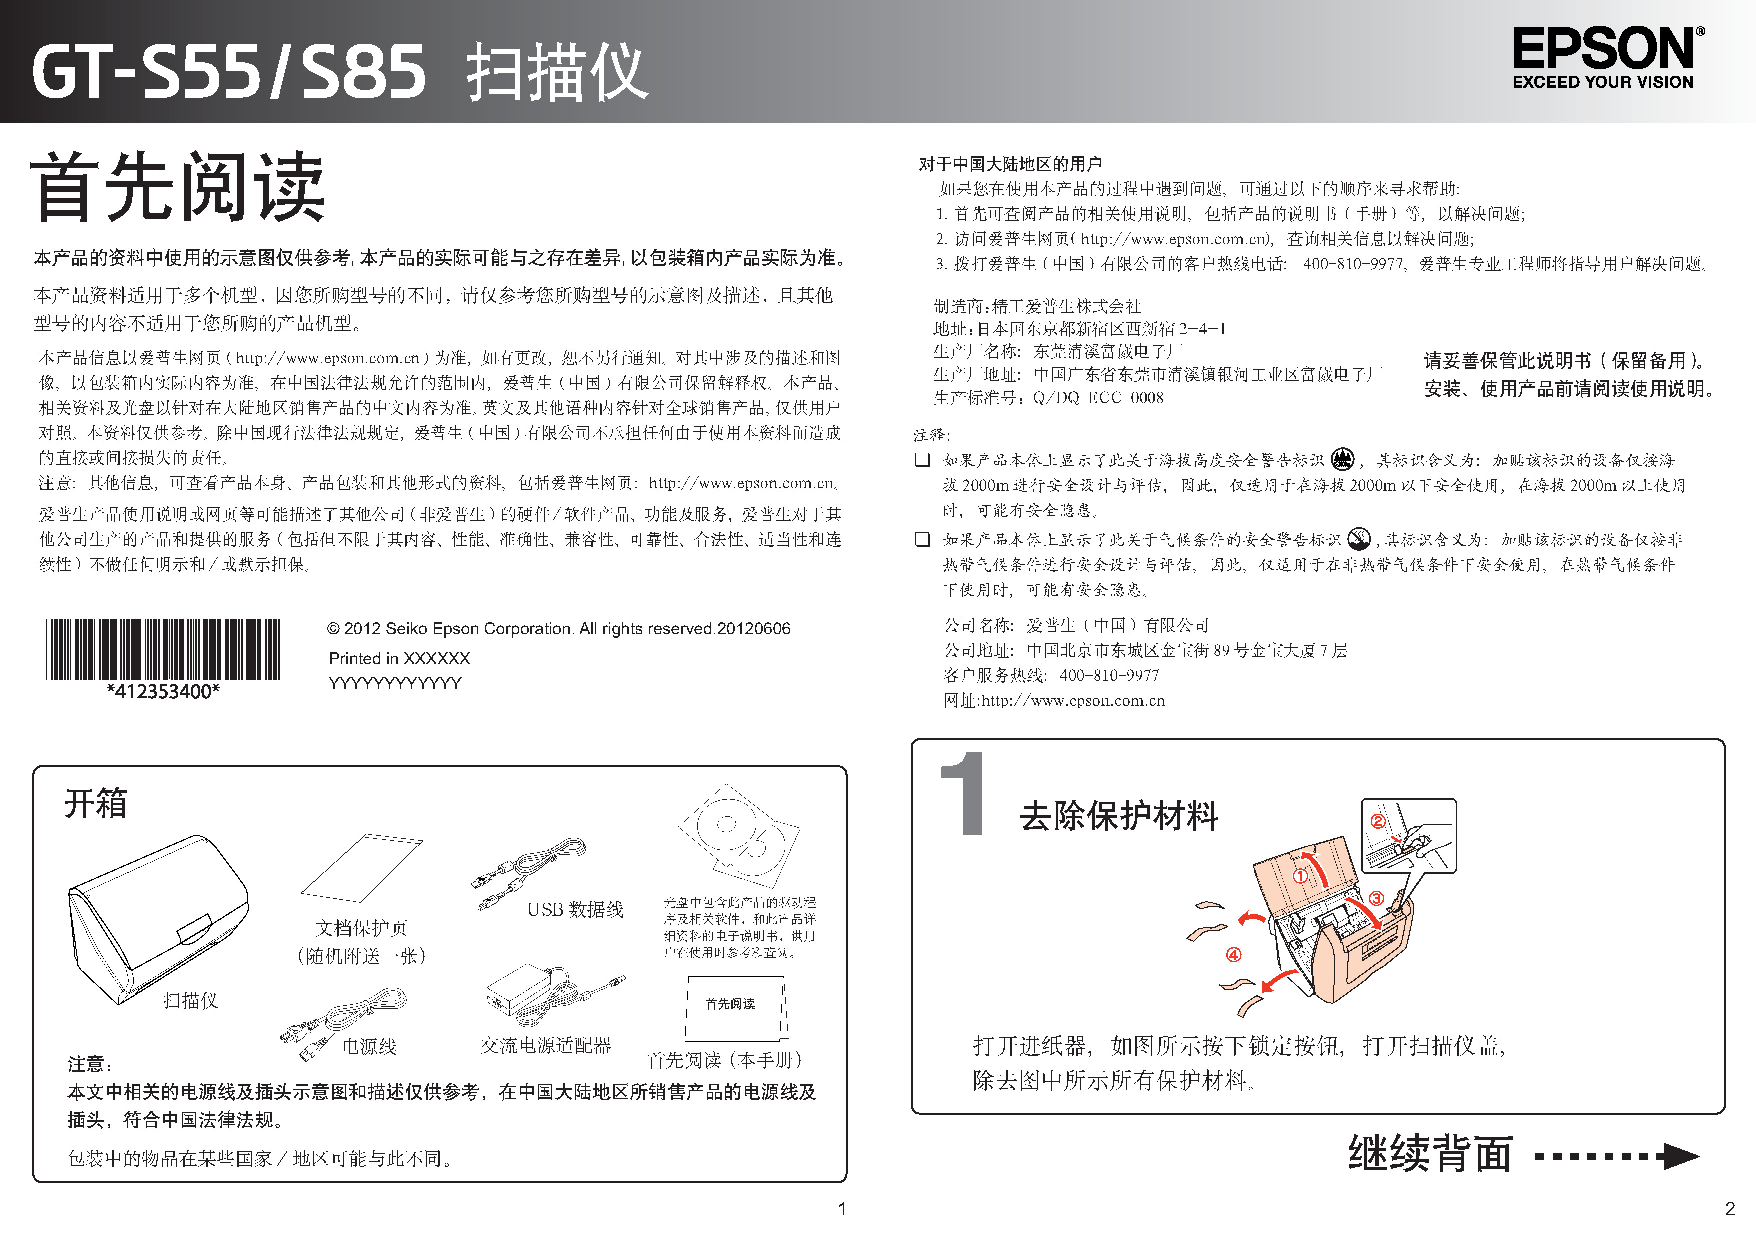 爱普生 Epson GT-S55 快速安装指南 封面